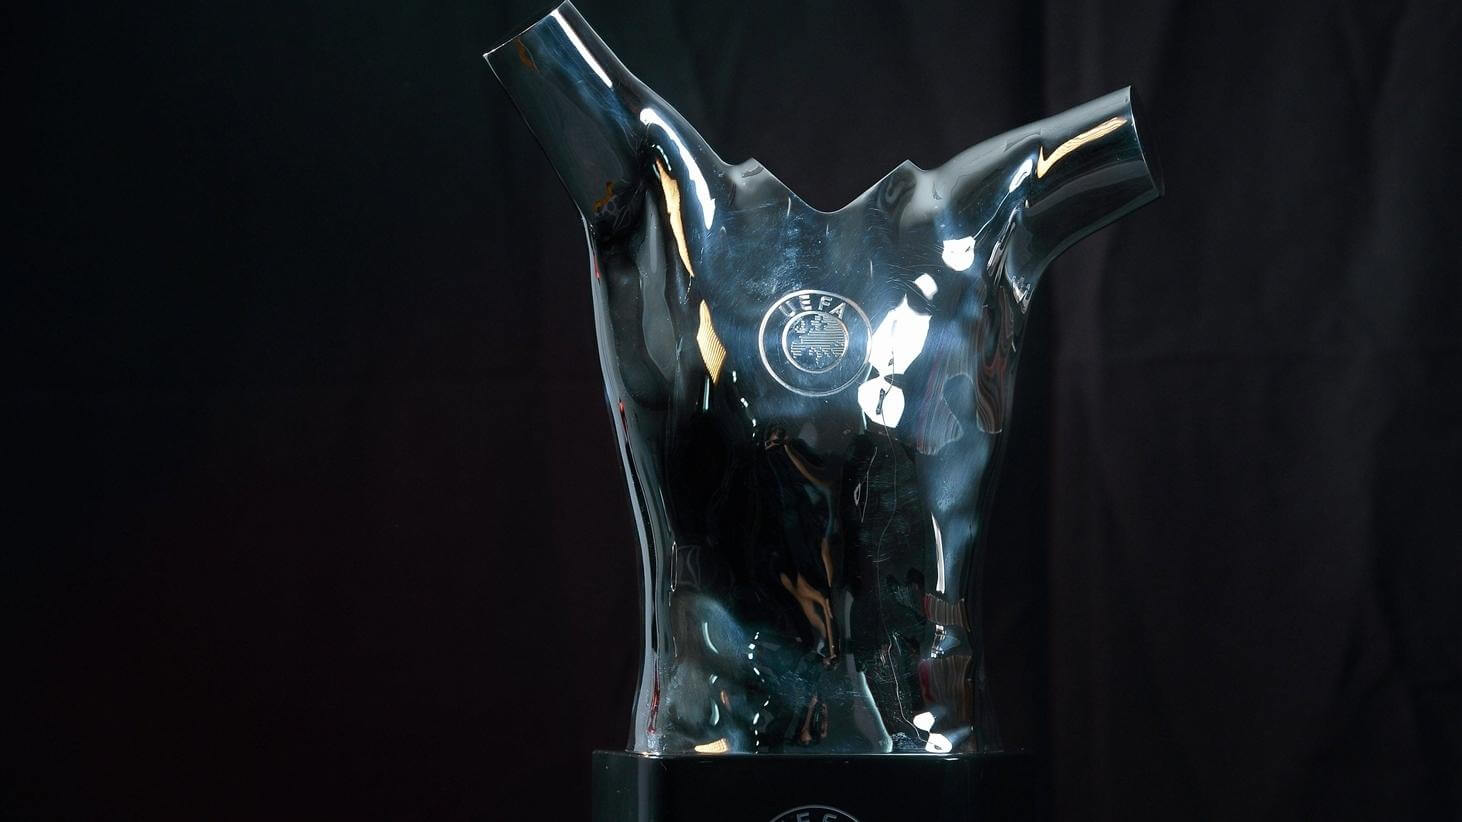 ՈՒԵՖԱ-ն հրապարակել է 2021/22 մրցաշրջանի «Լավագույն ֆուտբոլիստ» մրցանակի հավակնորդներին